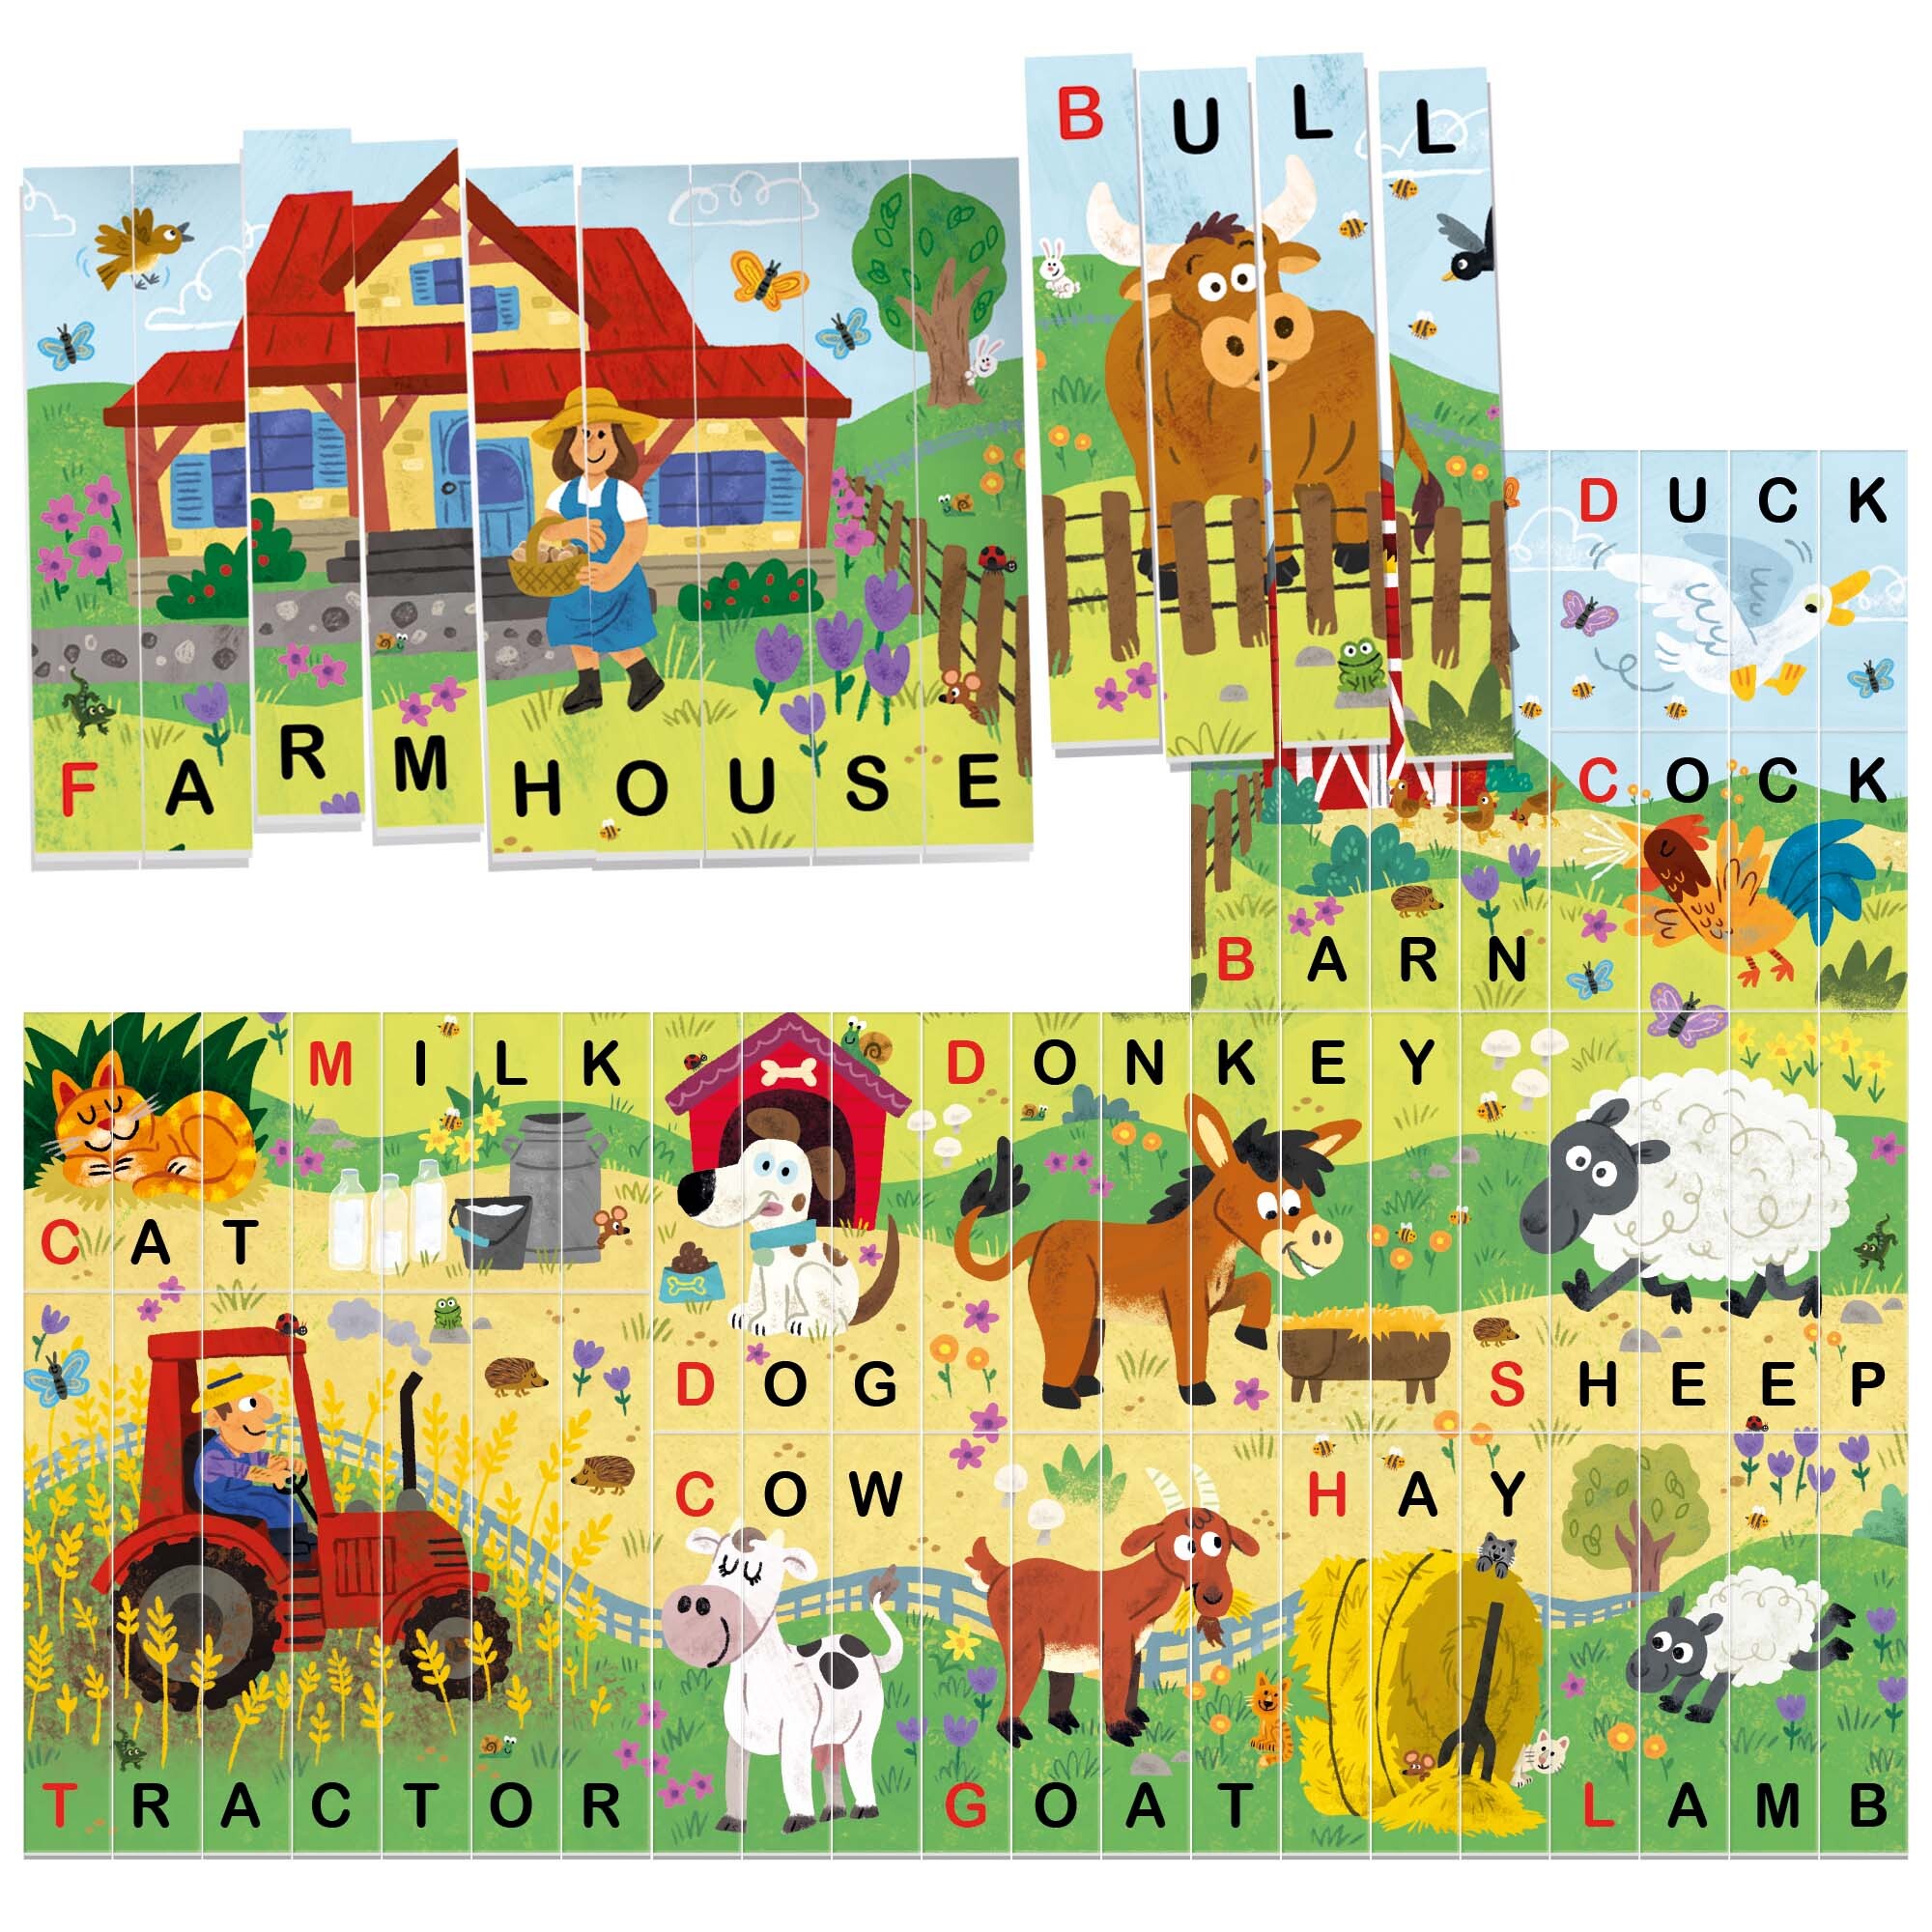 Word maker puzzle the farm.	costruisco e imparo le prime parole in inglese.	made in italy - HEADU